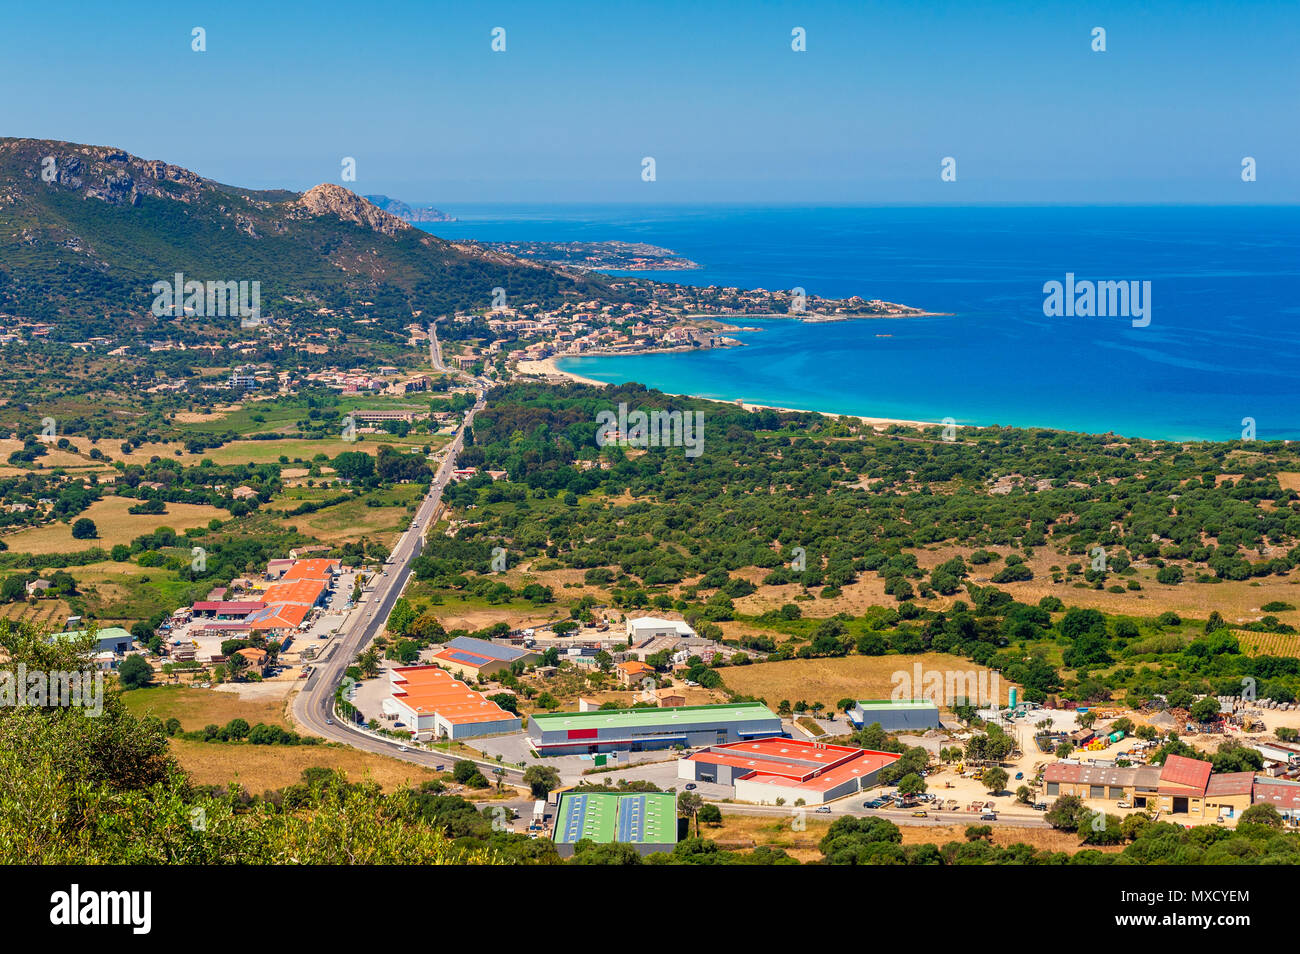 High angle view sur le village d'Algajola, Corse, France Banque D'Images